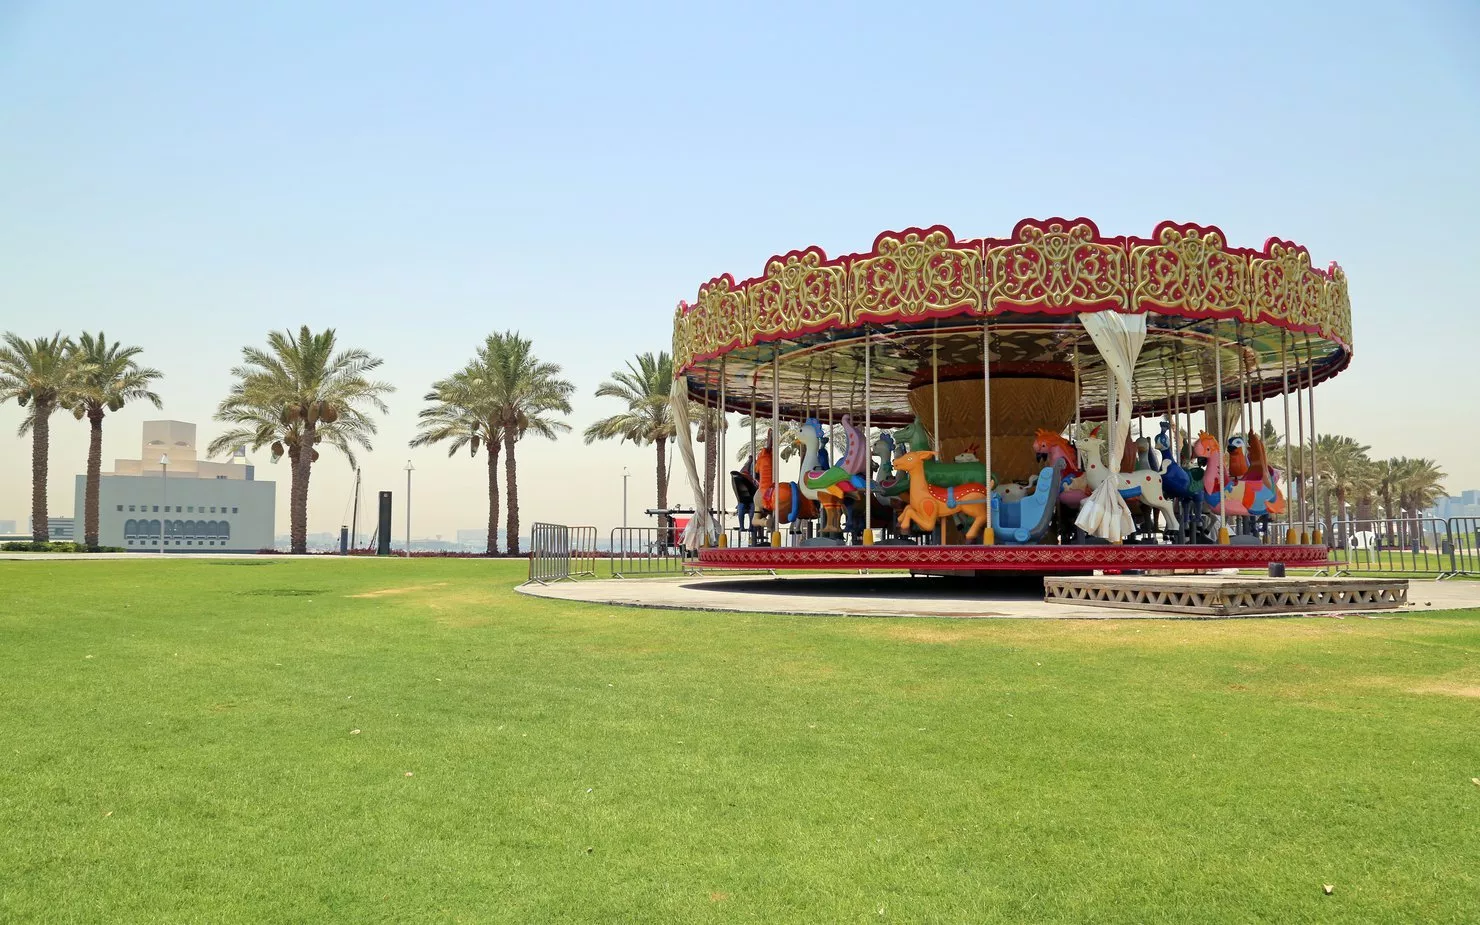 افضل اماكن سياحية للعوائل في قطر مليئة بالأجواء الممتعة والمرحة